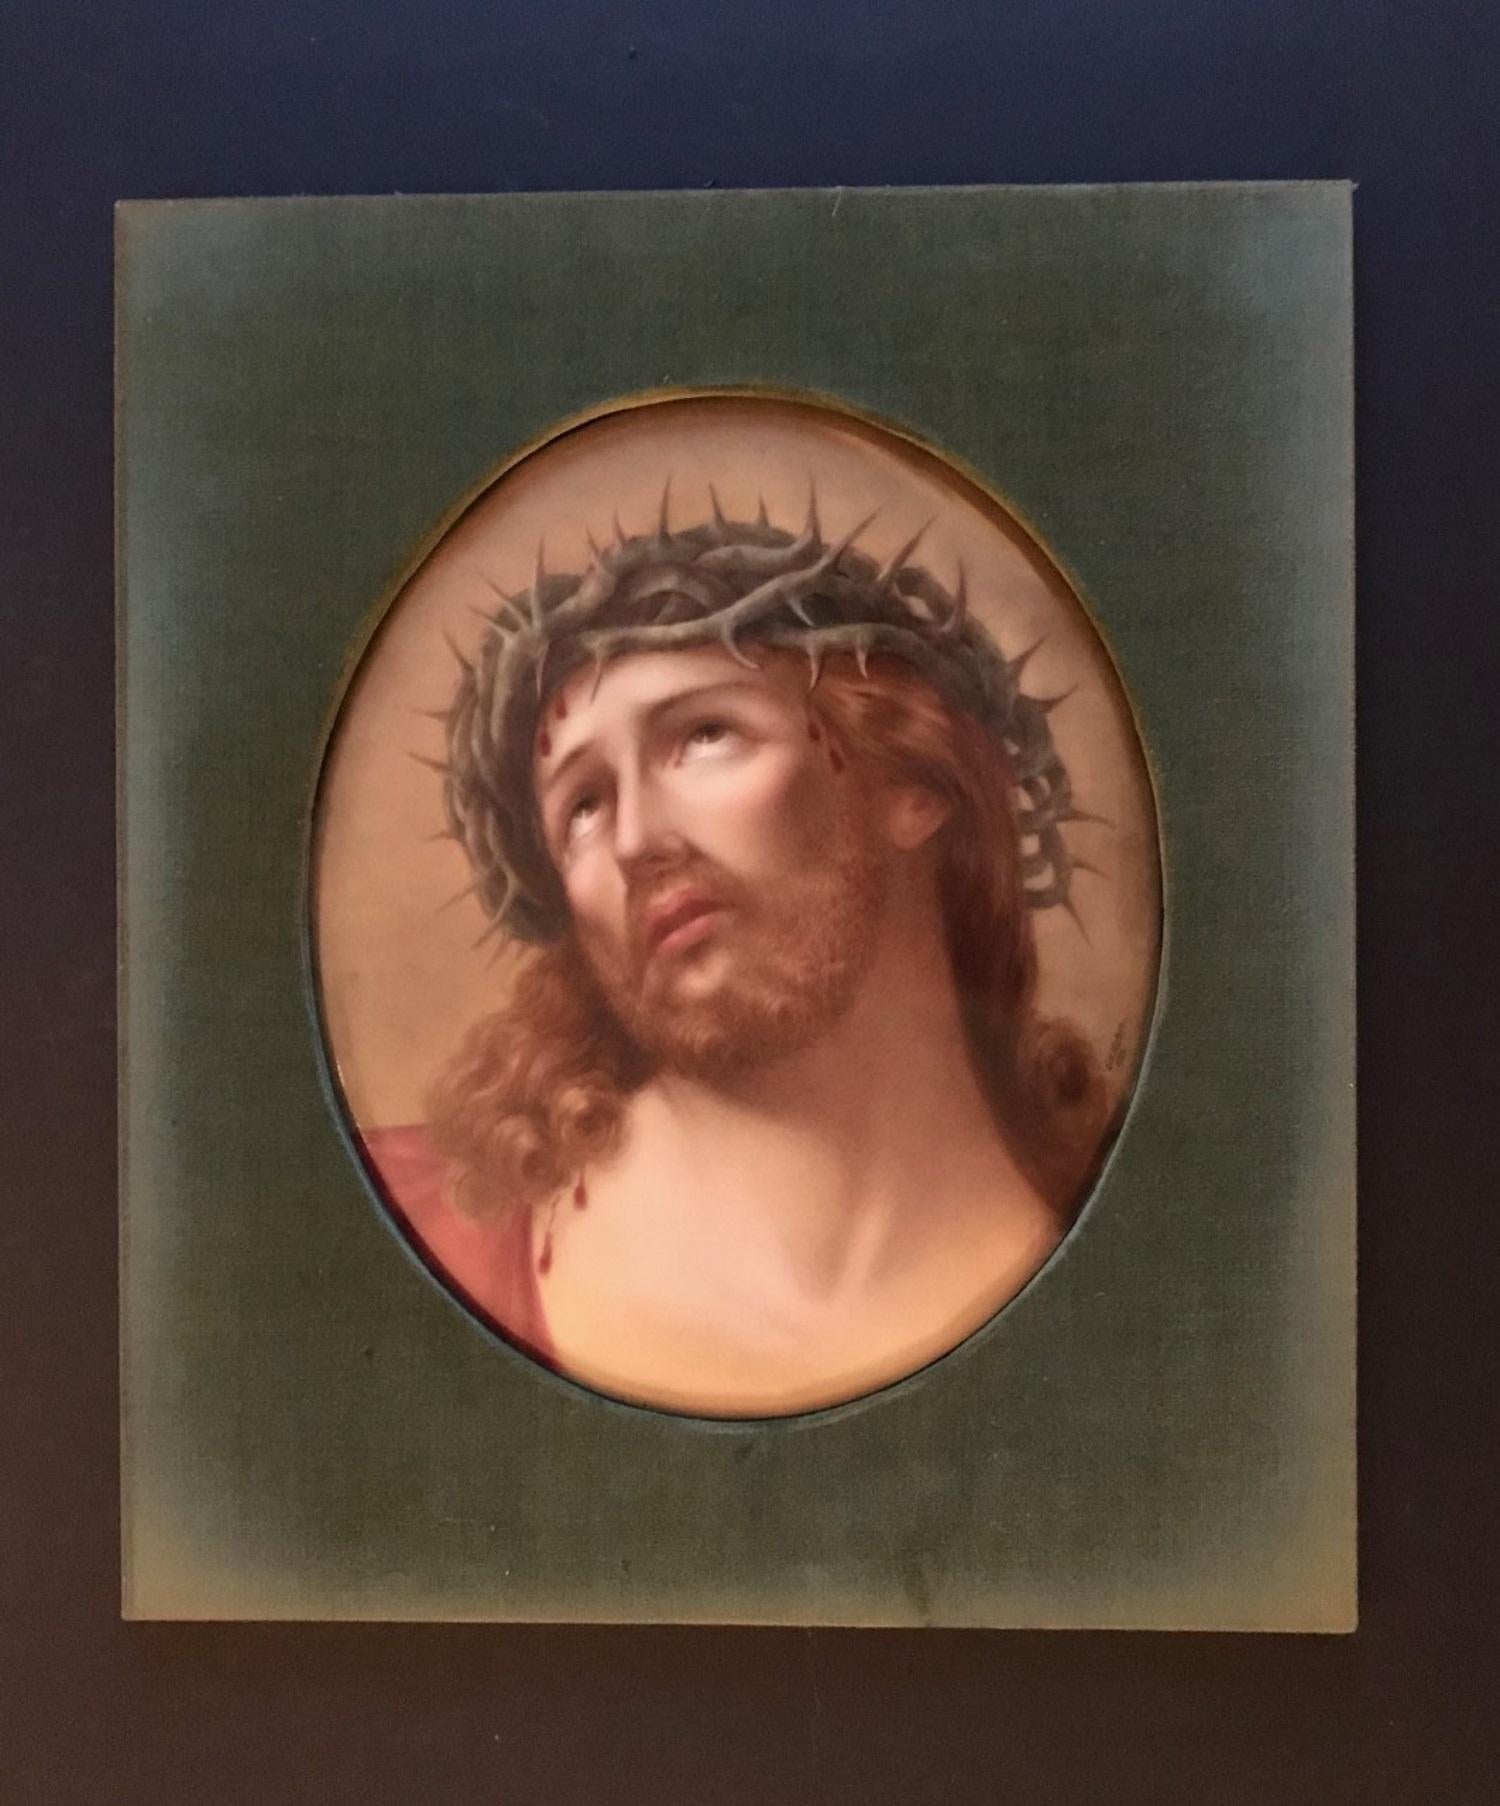 Dies ist ein hervorragendes Porträt von Christus. Sie ist in außergewöhnlicher Qualität mit polychromer Emaille auf einer ovalen Porzellanplatte nach dem Originalgemälde -Kopf Christi- des italienischen Künstlers Guido Reni (1575-1642) handbemalt.